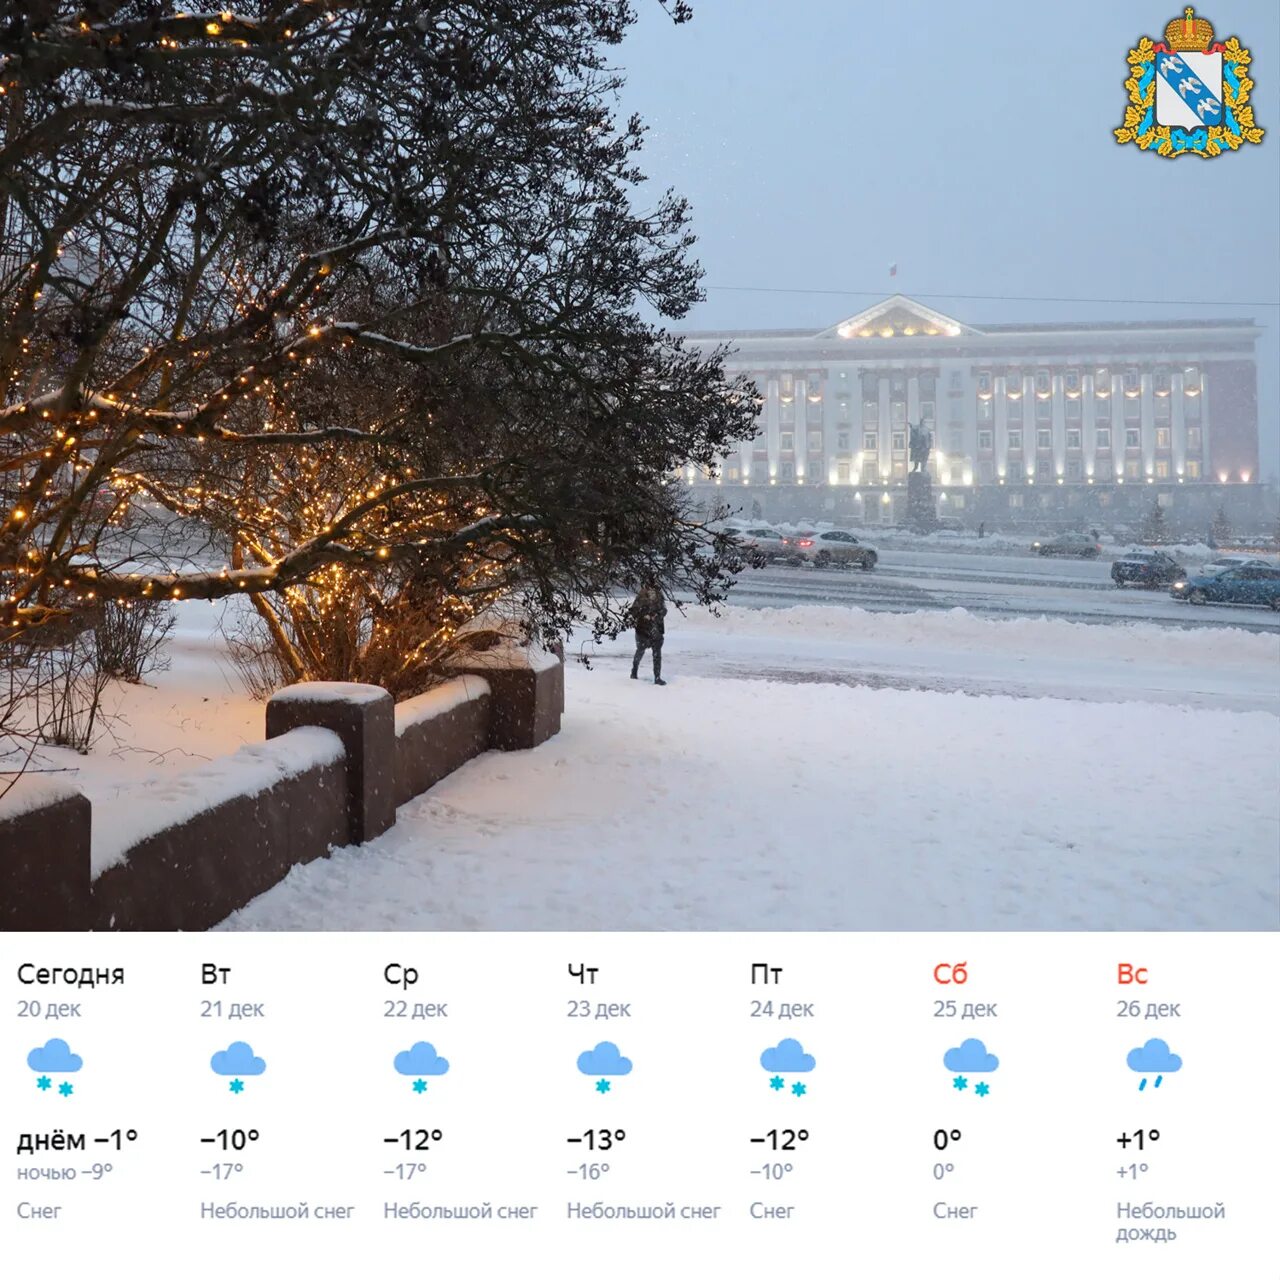 Курск погода подробный прогноз. Снегопад в Курске в марте 2013. Снегопад в Курске в марте 2013 года. Белгород погода зимой. Курск погода фото сейчас.